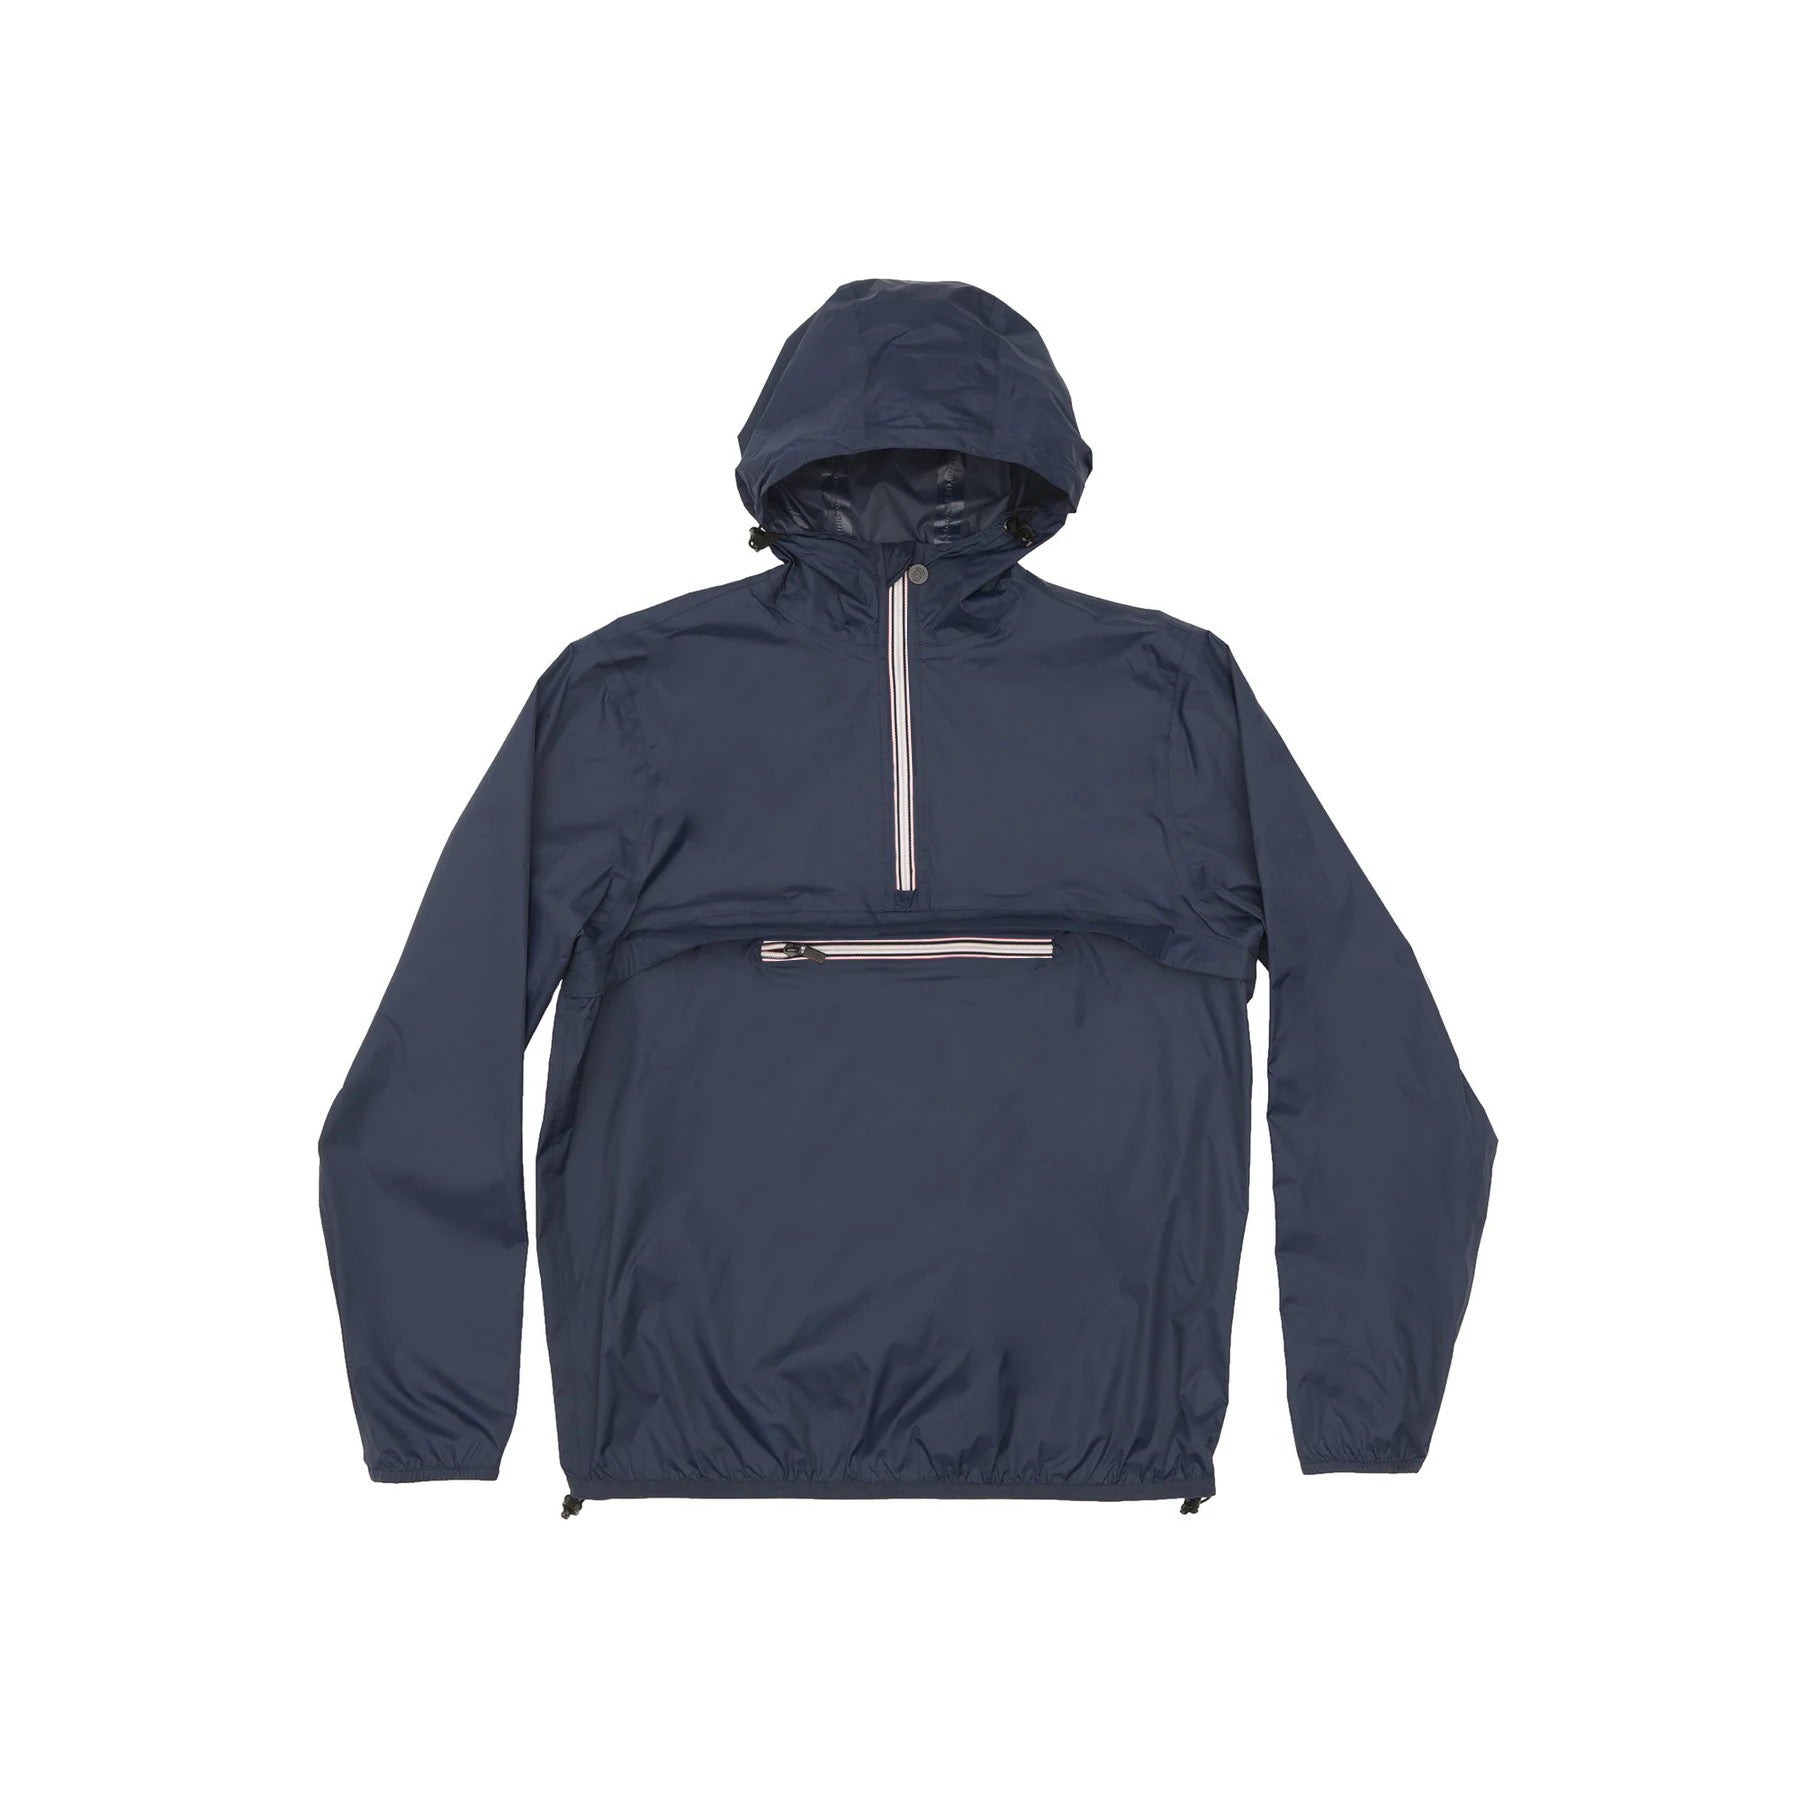 Men's navy quarter zip packable rain jacket and windbreaker